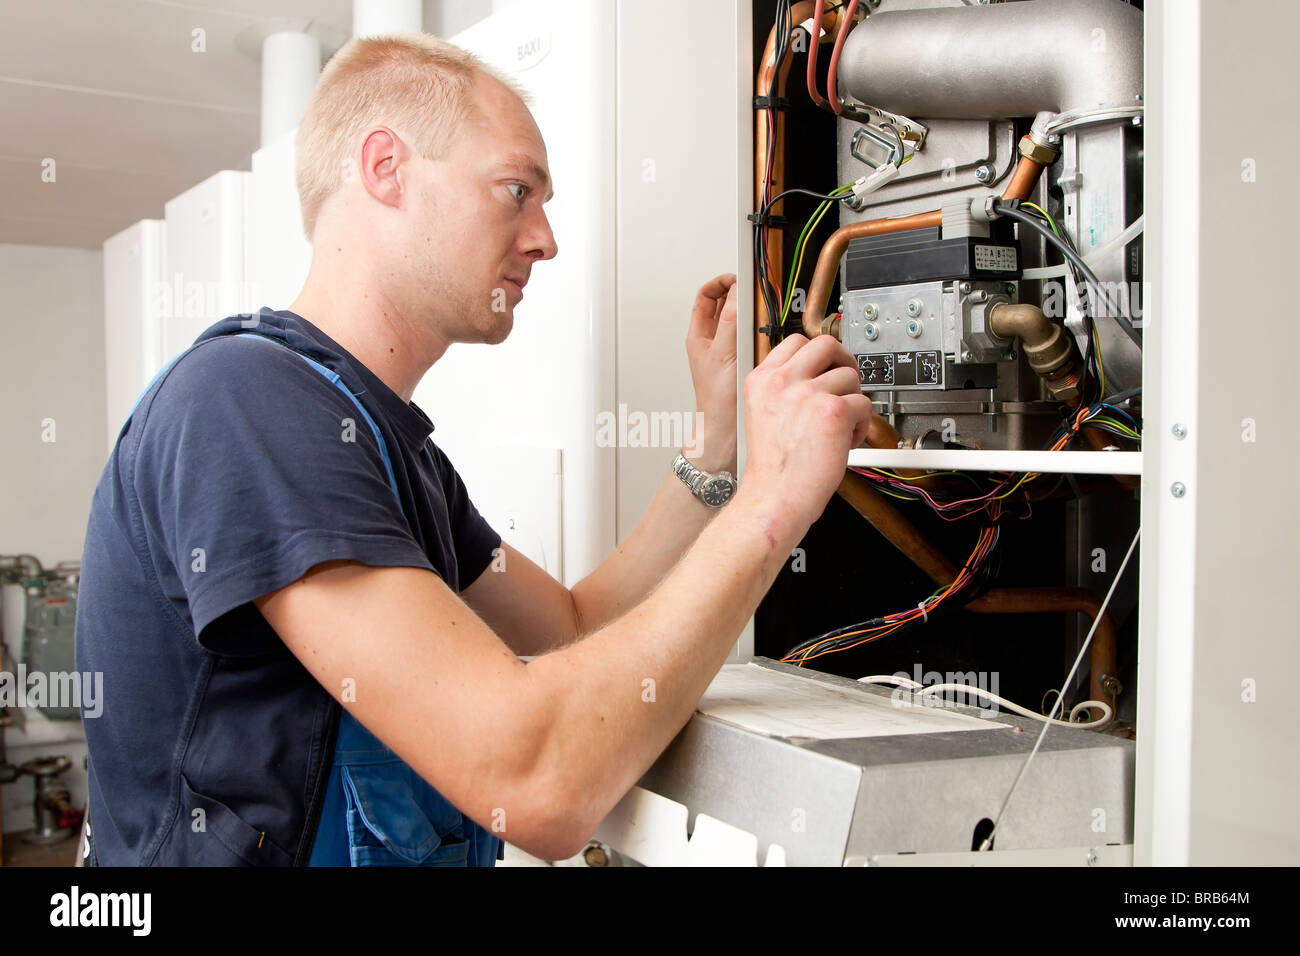 Calefacción y técnico sanitario comprobación y ajuste de un calentador de gas Foto de stock